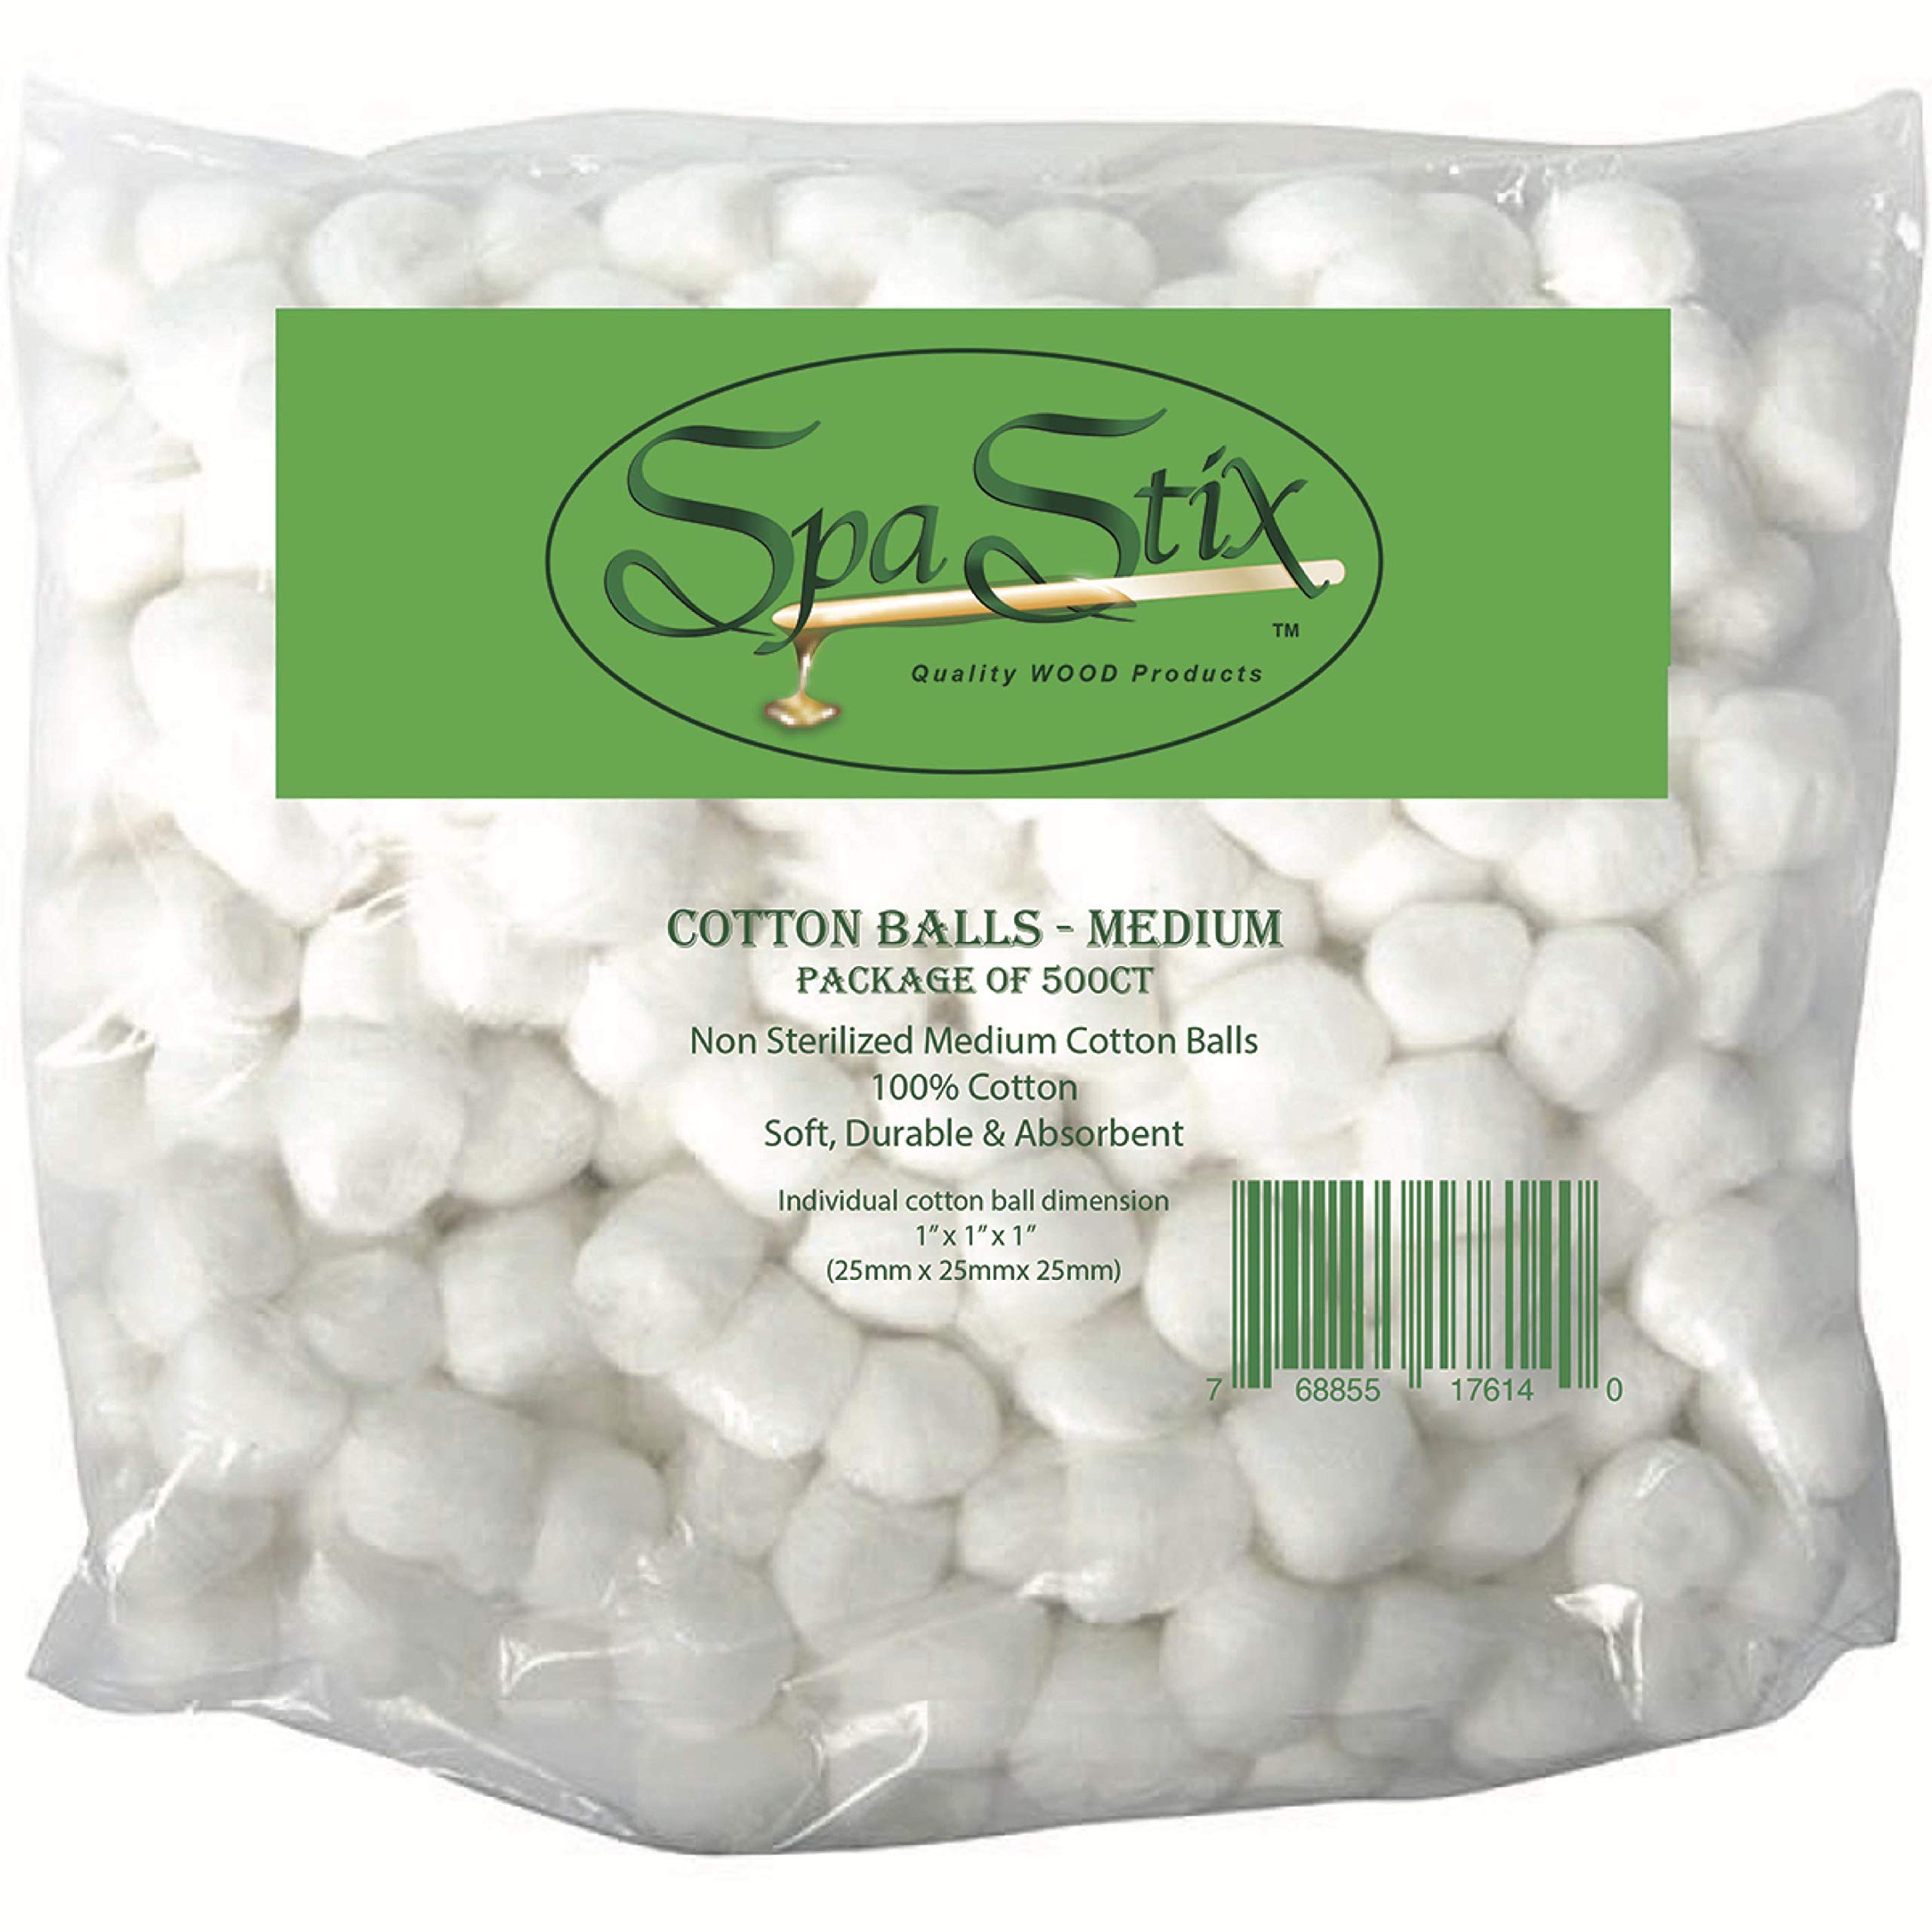 Spa Stix Cotton Balls. 500 Count Medium Size. Non Sterile Super Soft.